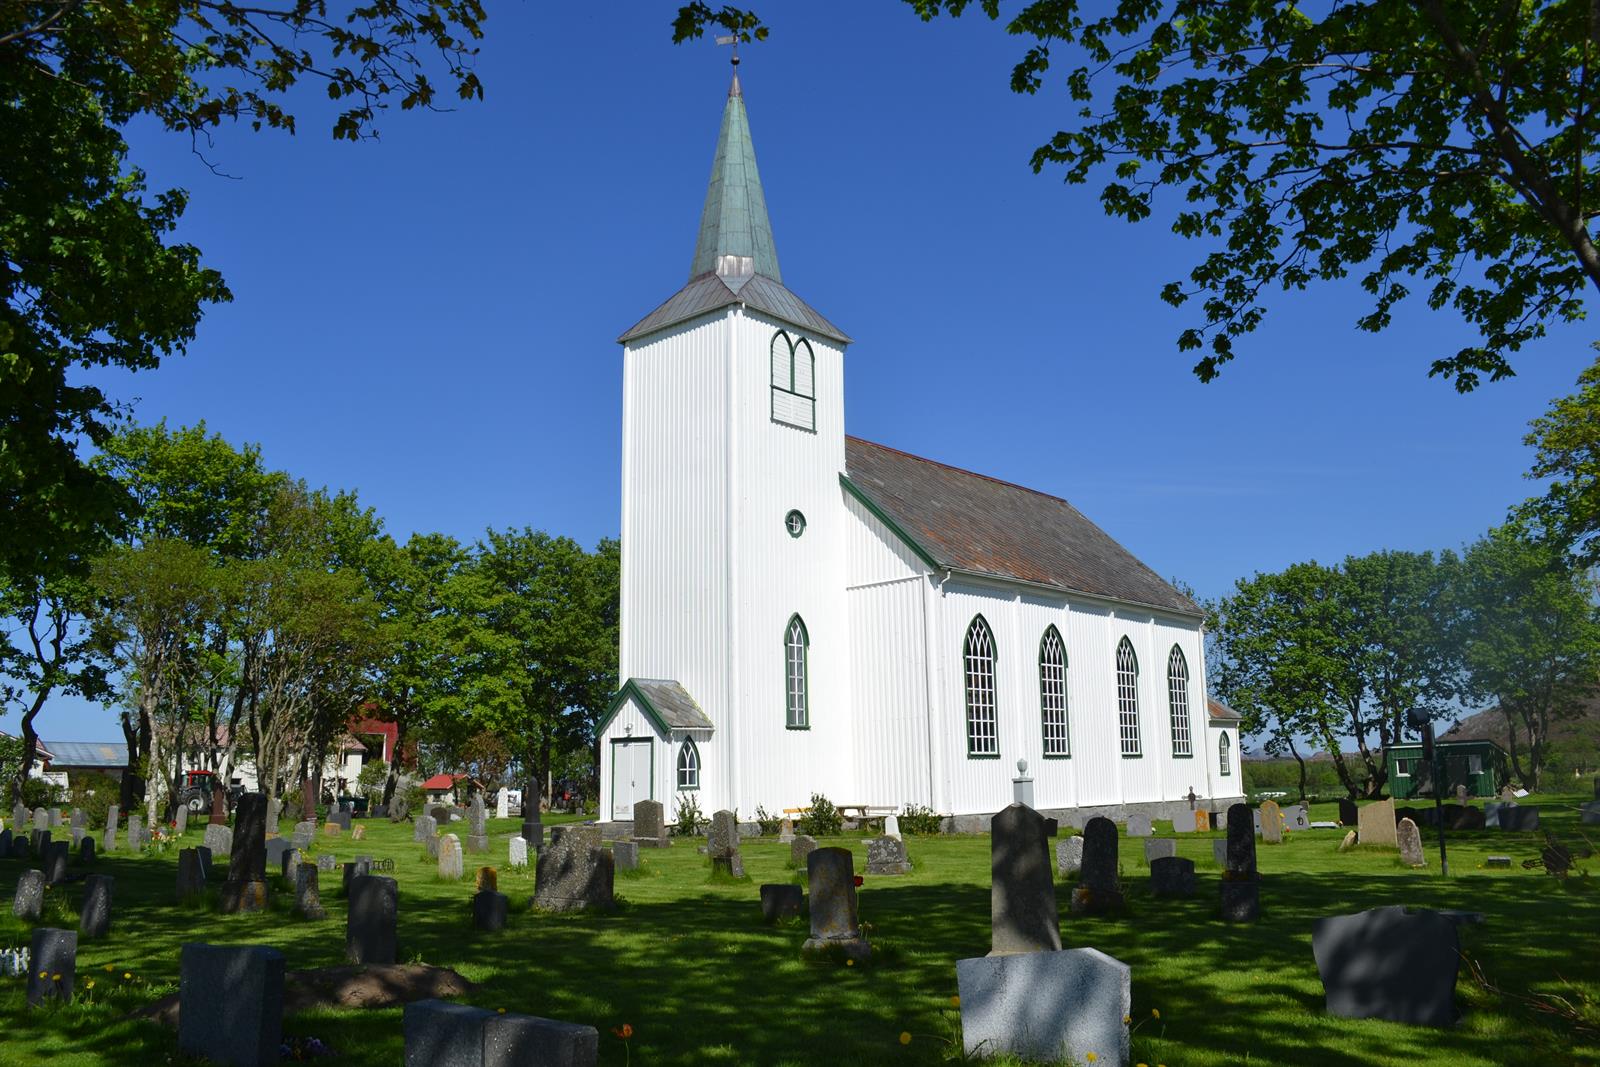 Nes kirke i Bjugn er en langkirke fra 1878